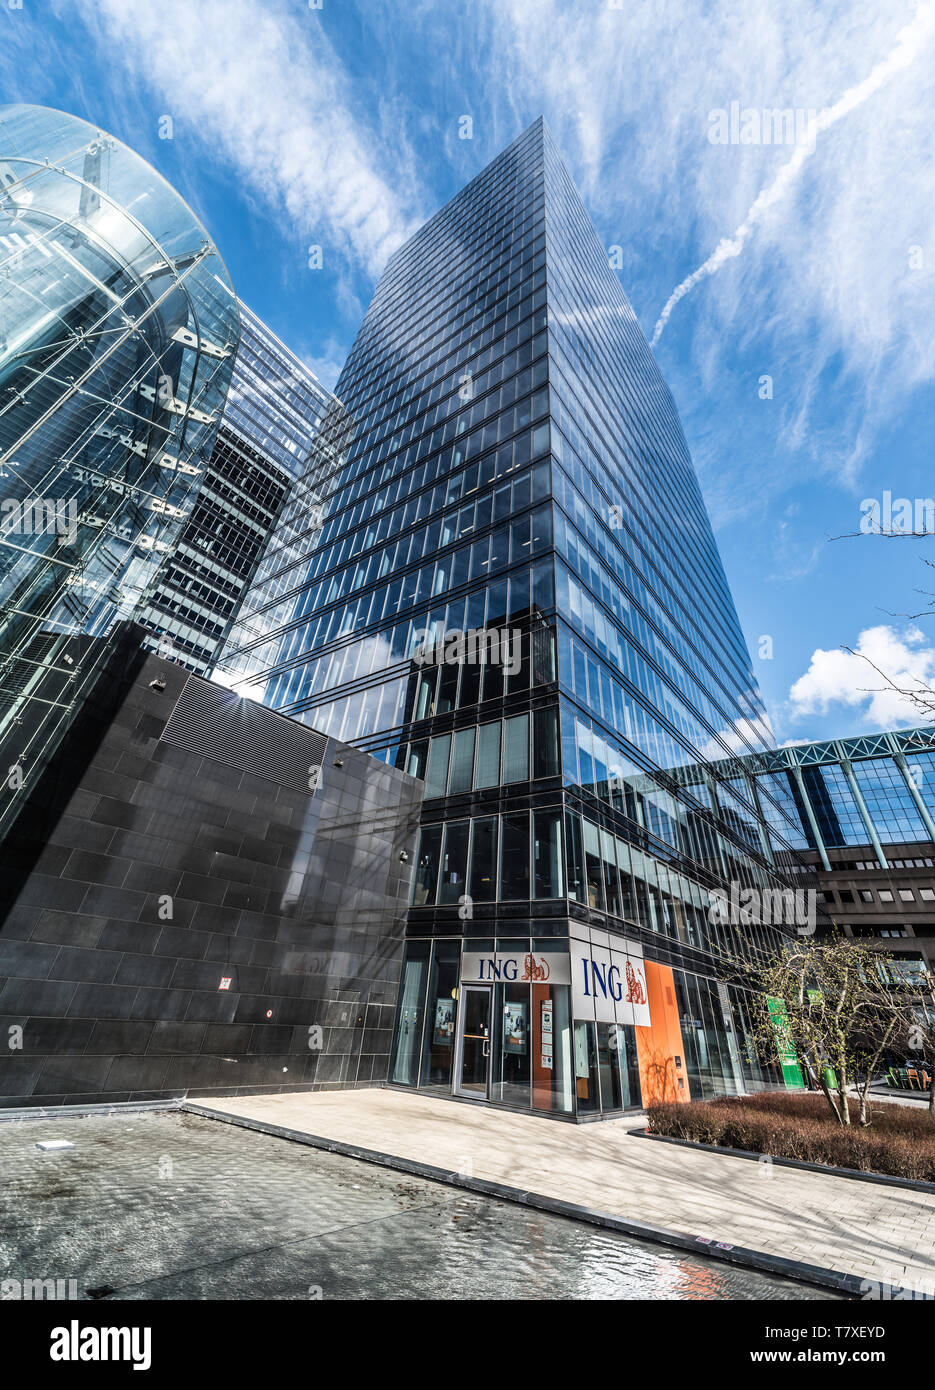 Bruxelles, Belgique - 03 10 2019 : une agence bancaire ING dans les quartier nord à côté du North Galaxy tower Banque D'Images